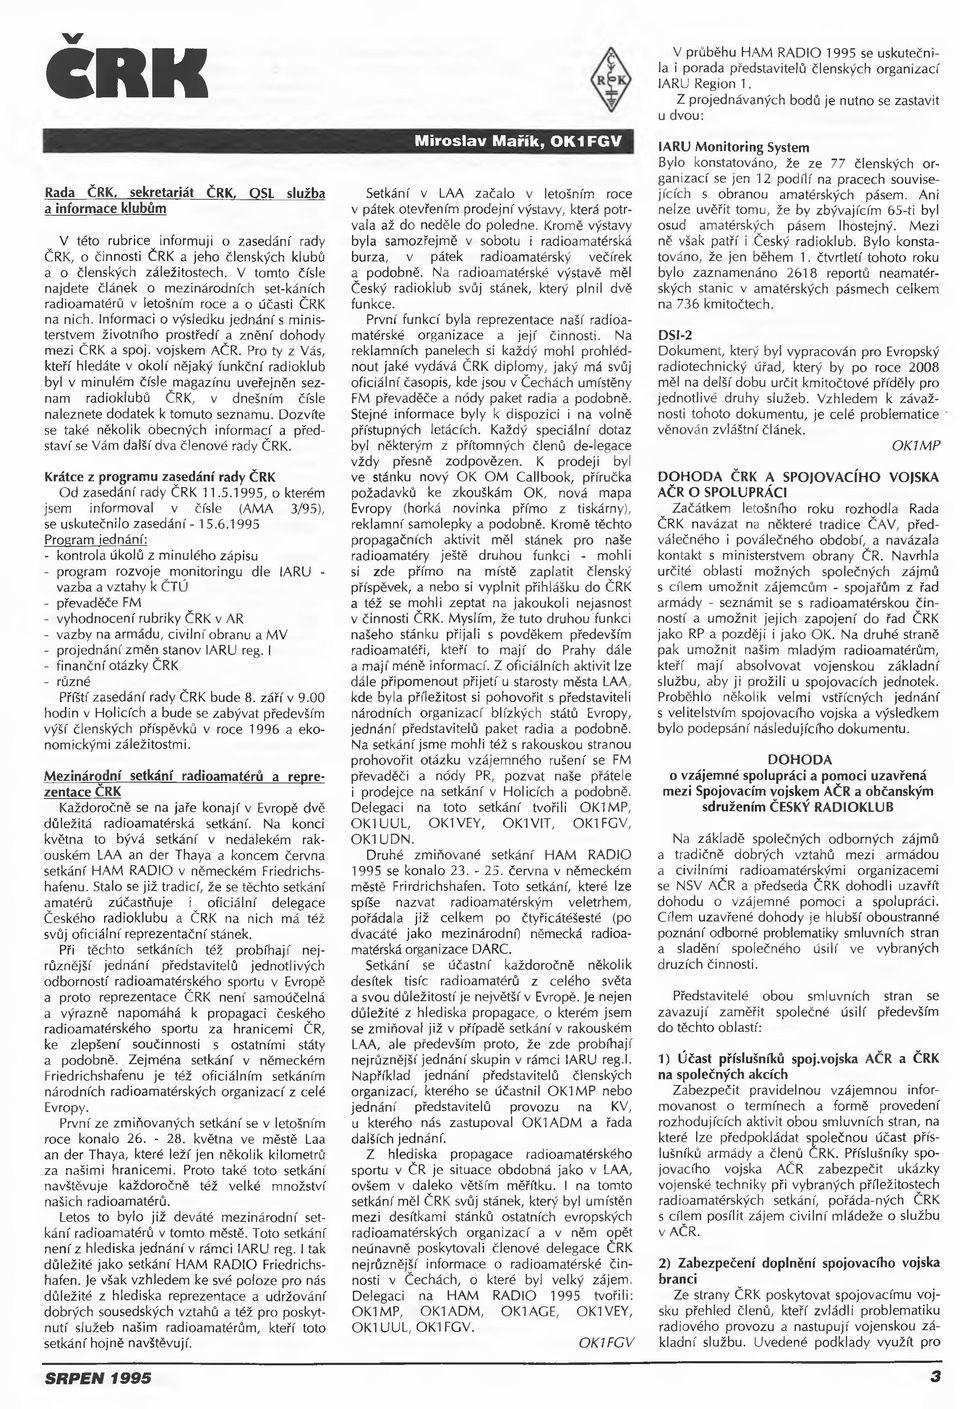 Informaci o výsledku jednání s ministerstvem životního prostředí a znění dohody mezi ČRK a spoj. vojskem AČR.